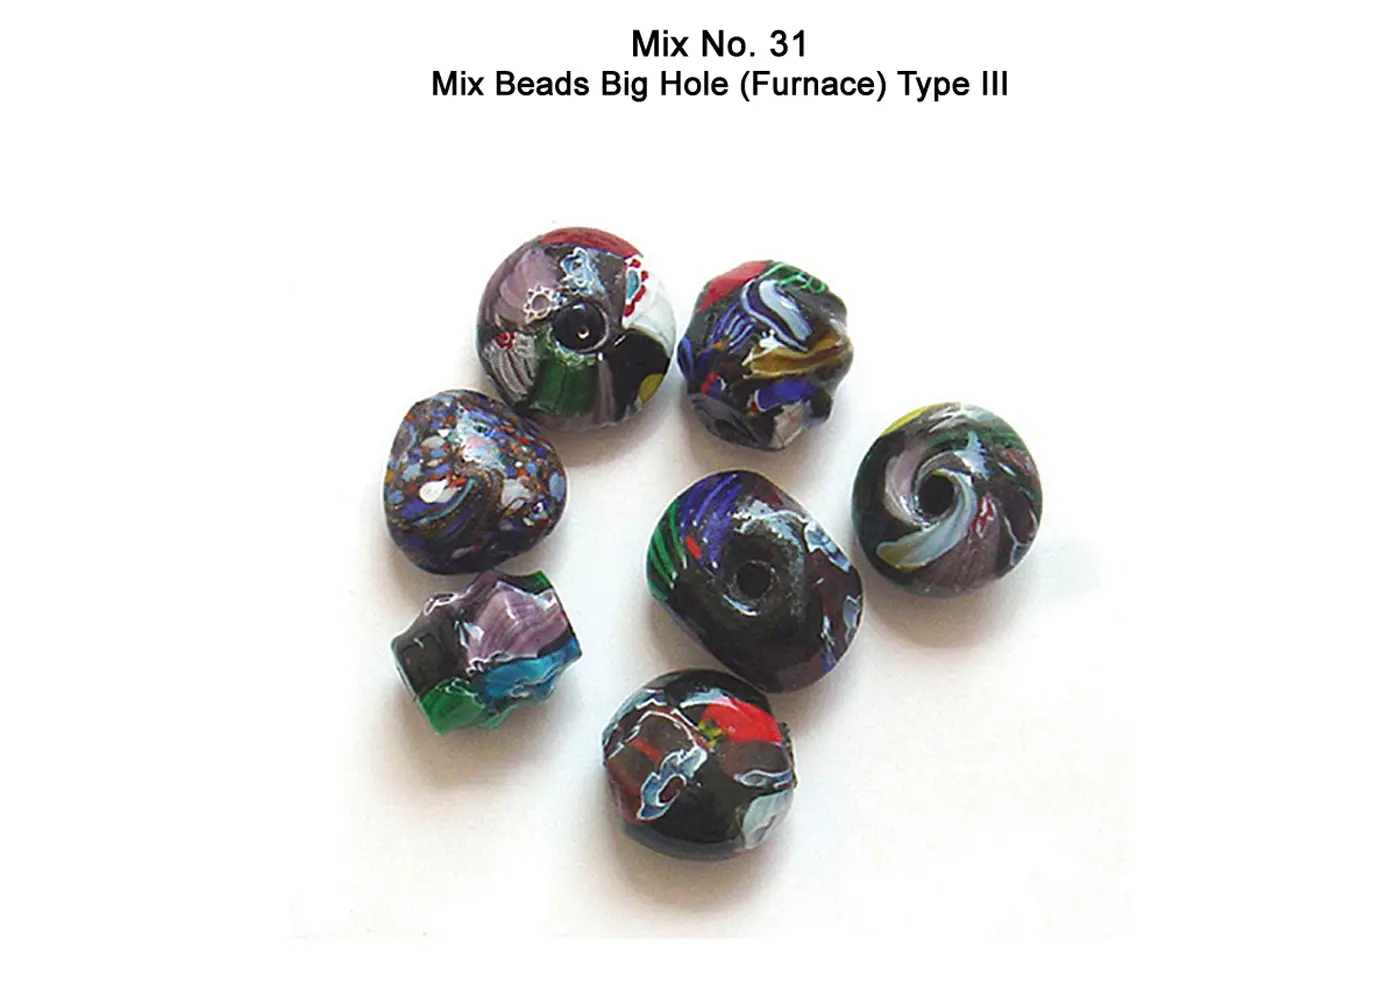 Mix Beads Big Hole (Furnace) Type III